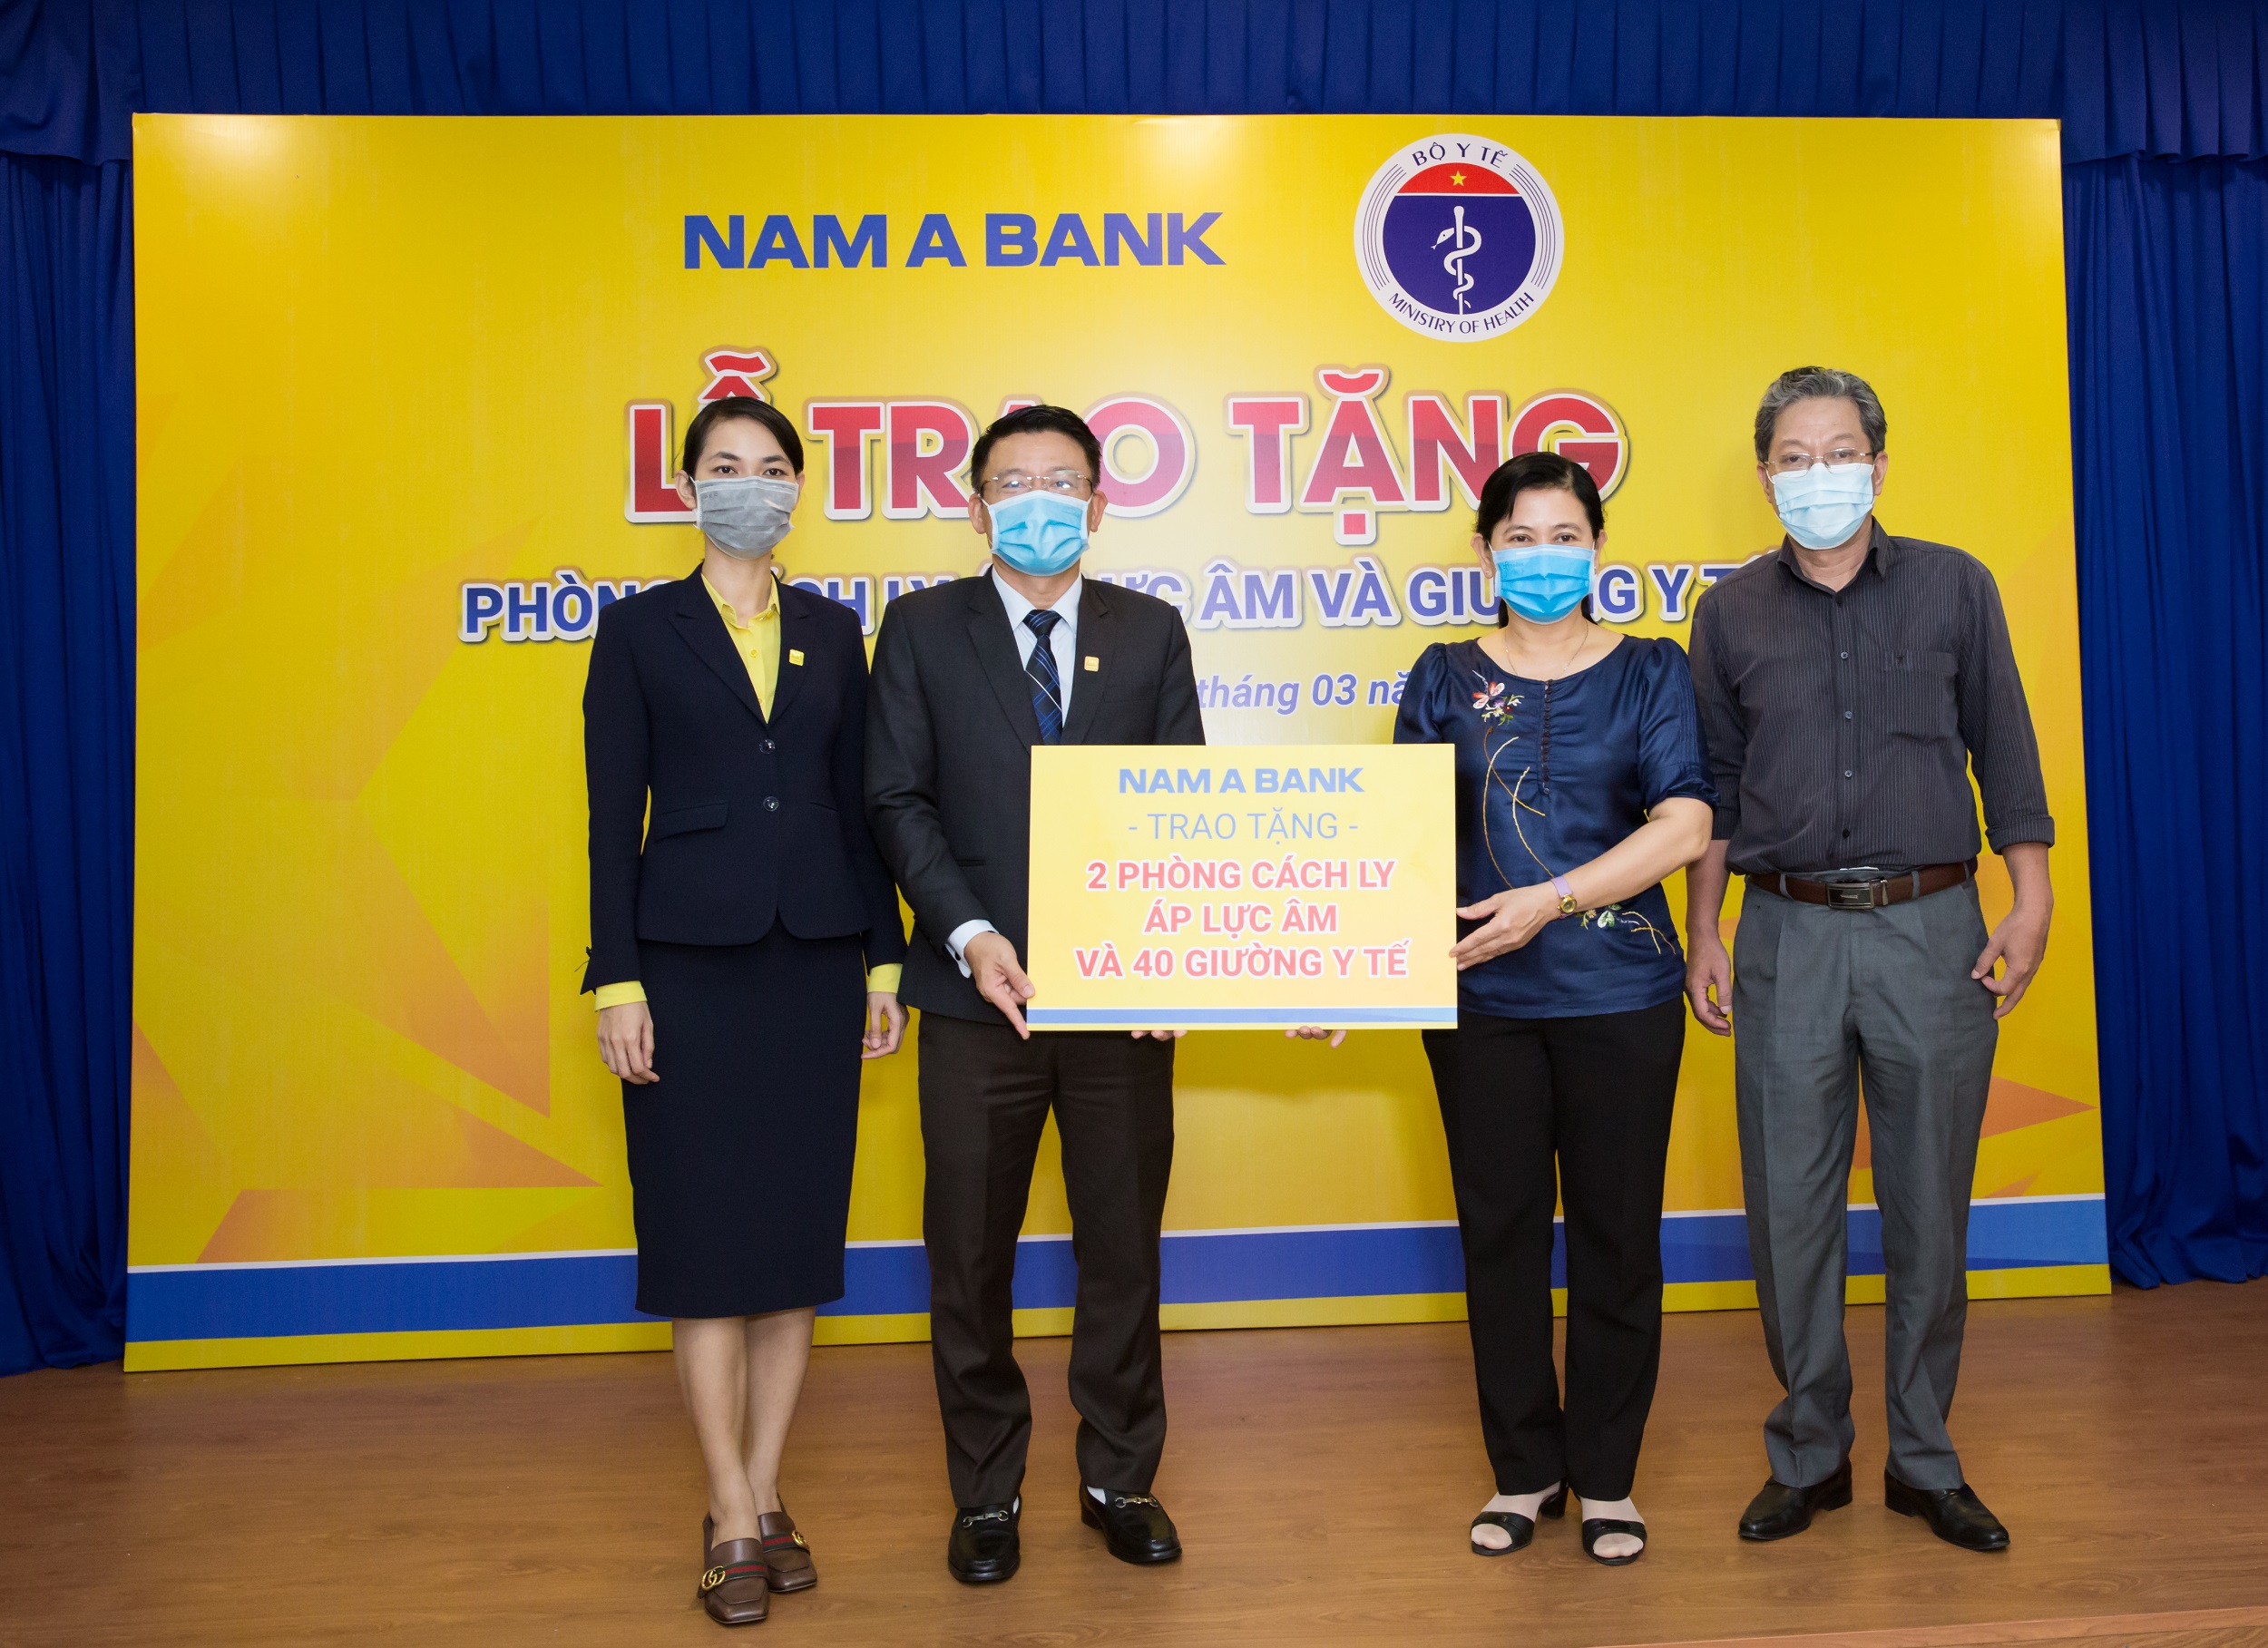 Hàng ngàn phần quà của Nam A Bank trao tặng đến người dân vùng dịch